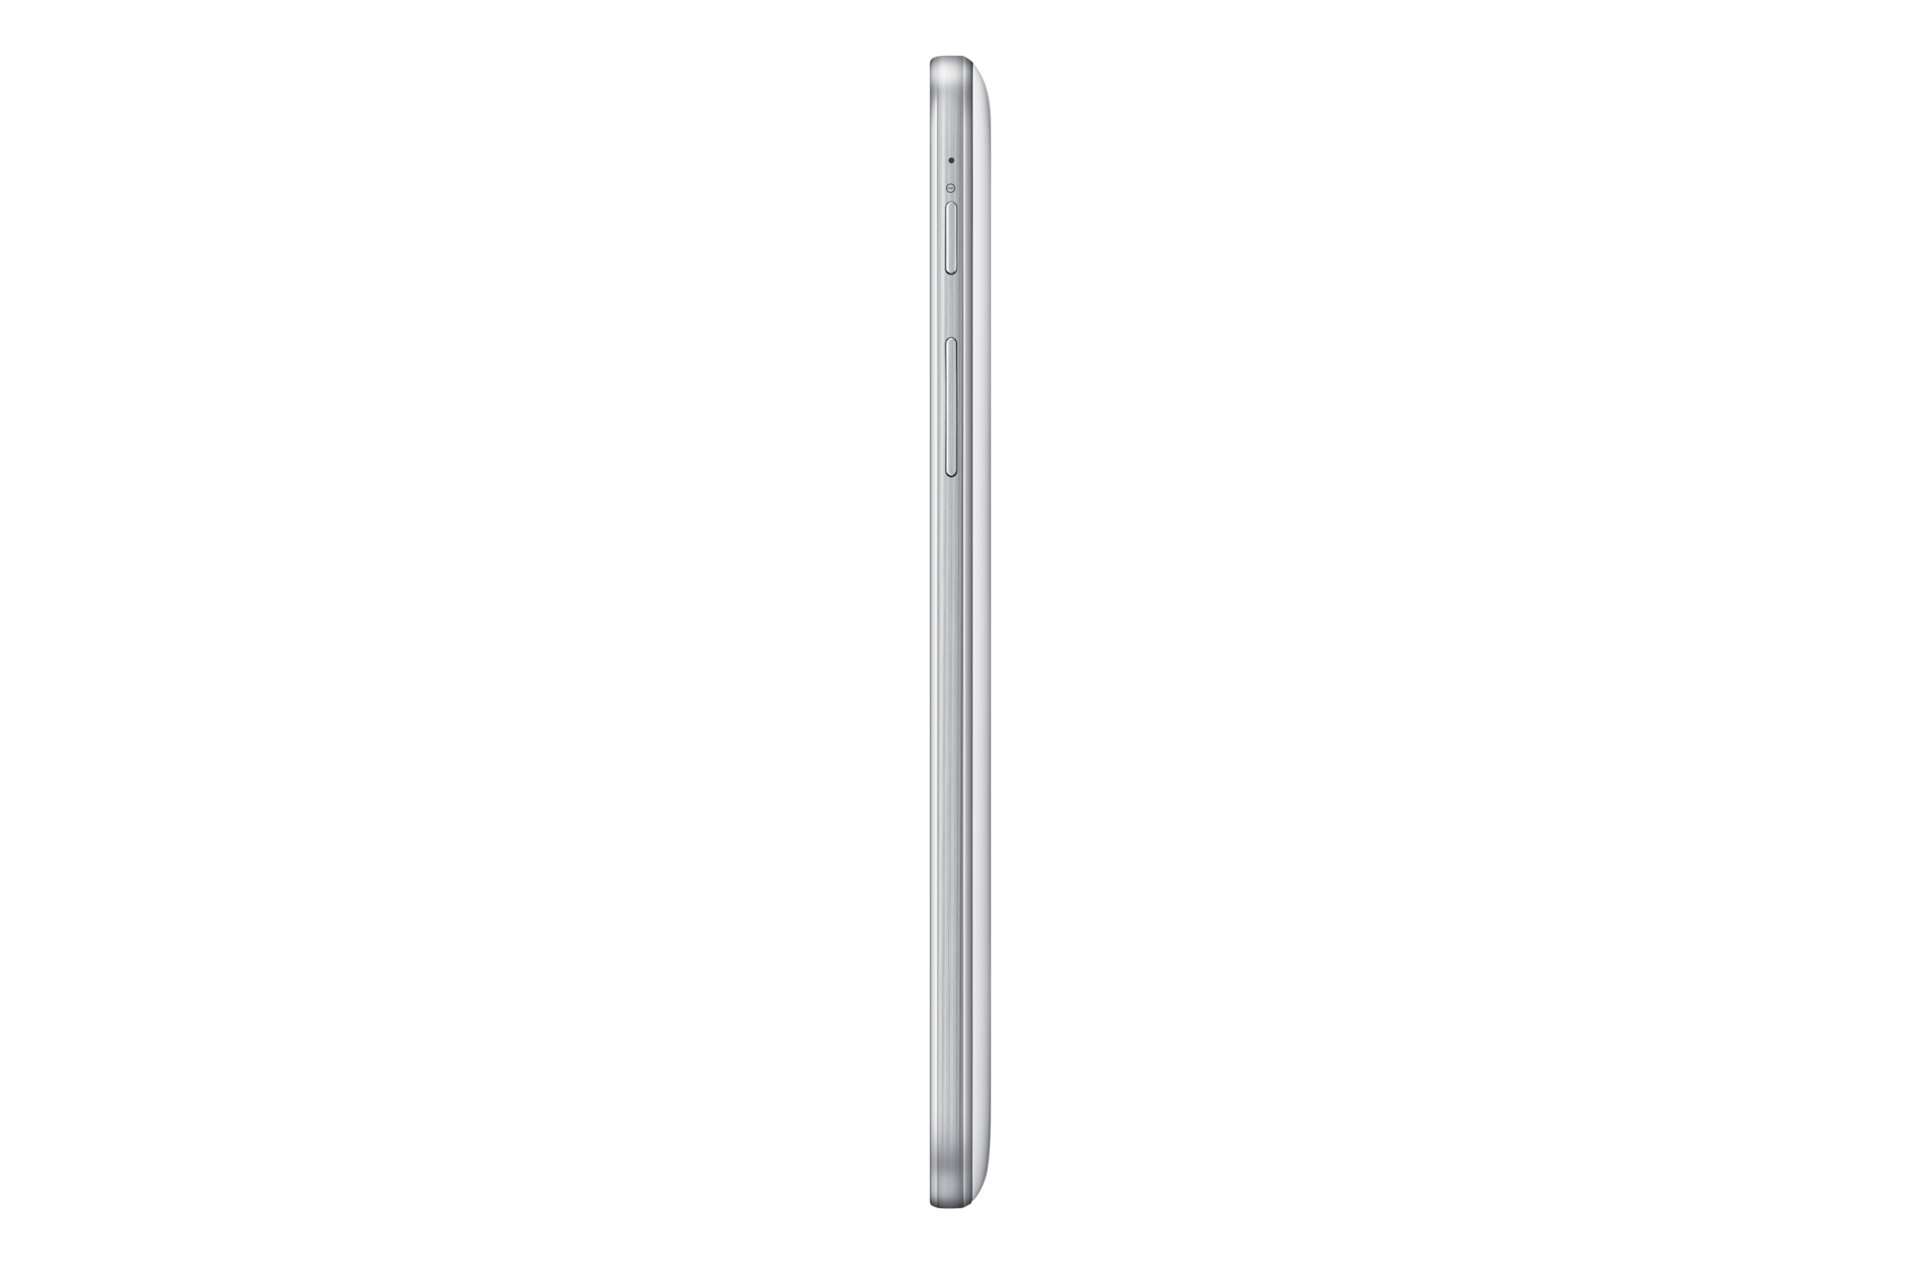 Samsung Galaxy Tab 3 7.0 T211 (8GB) + Bluetooth